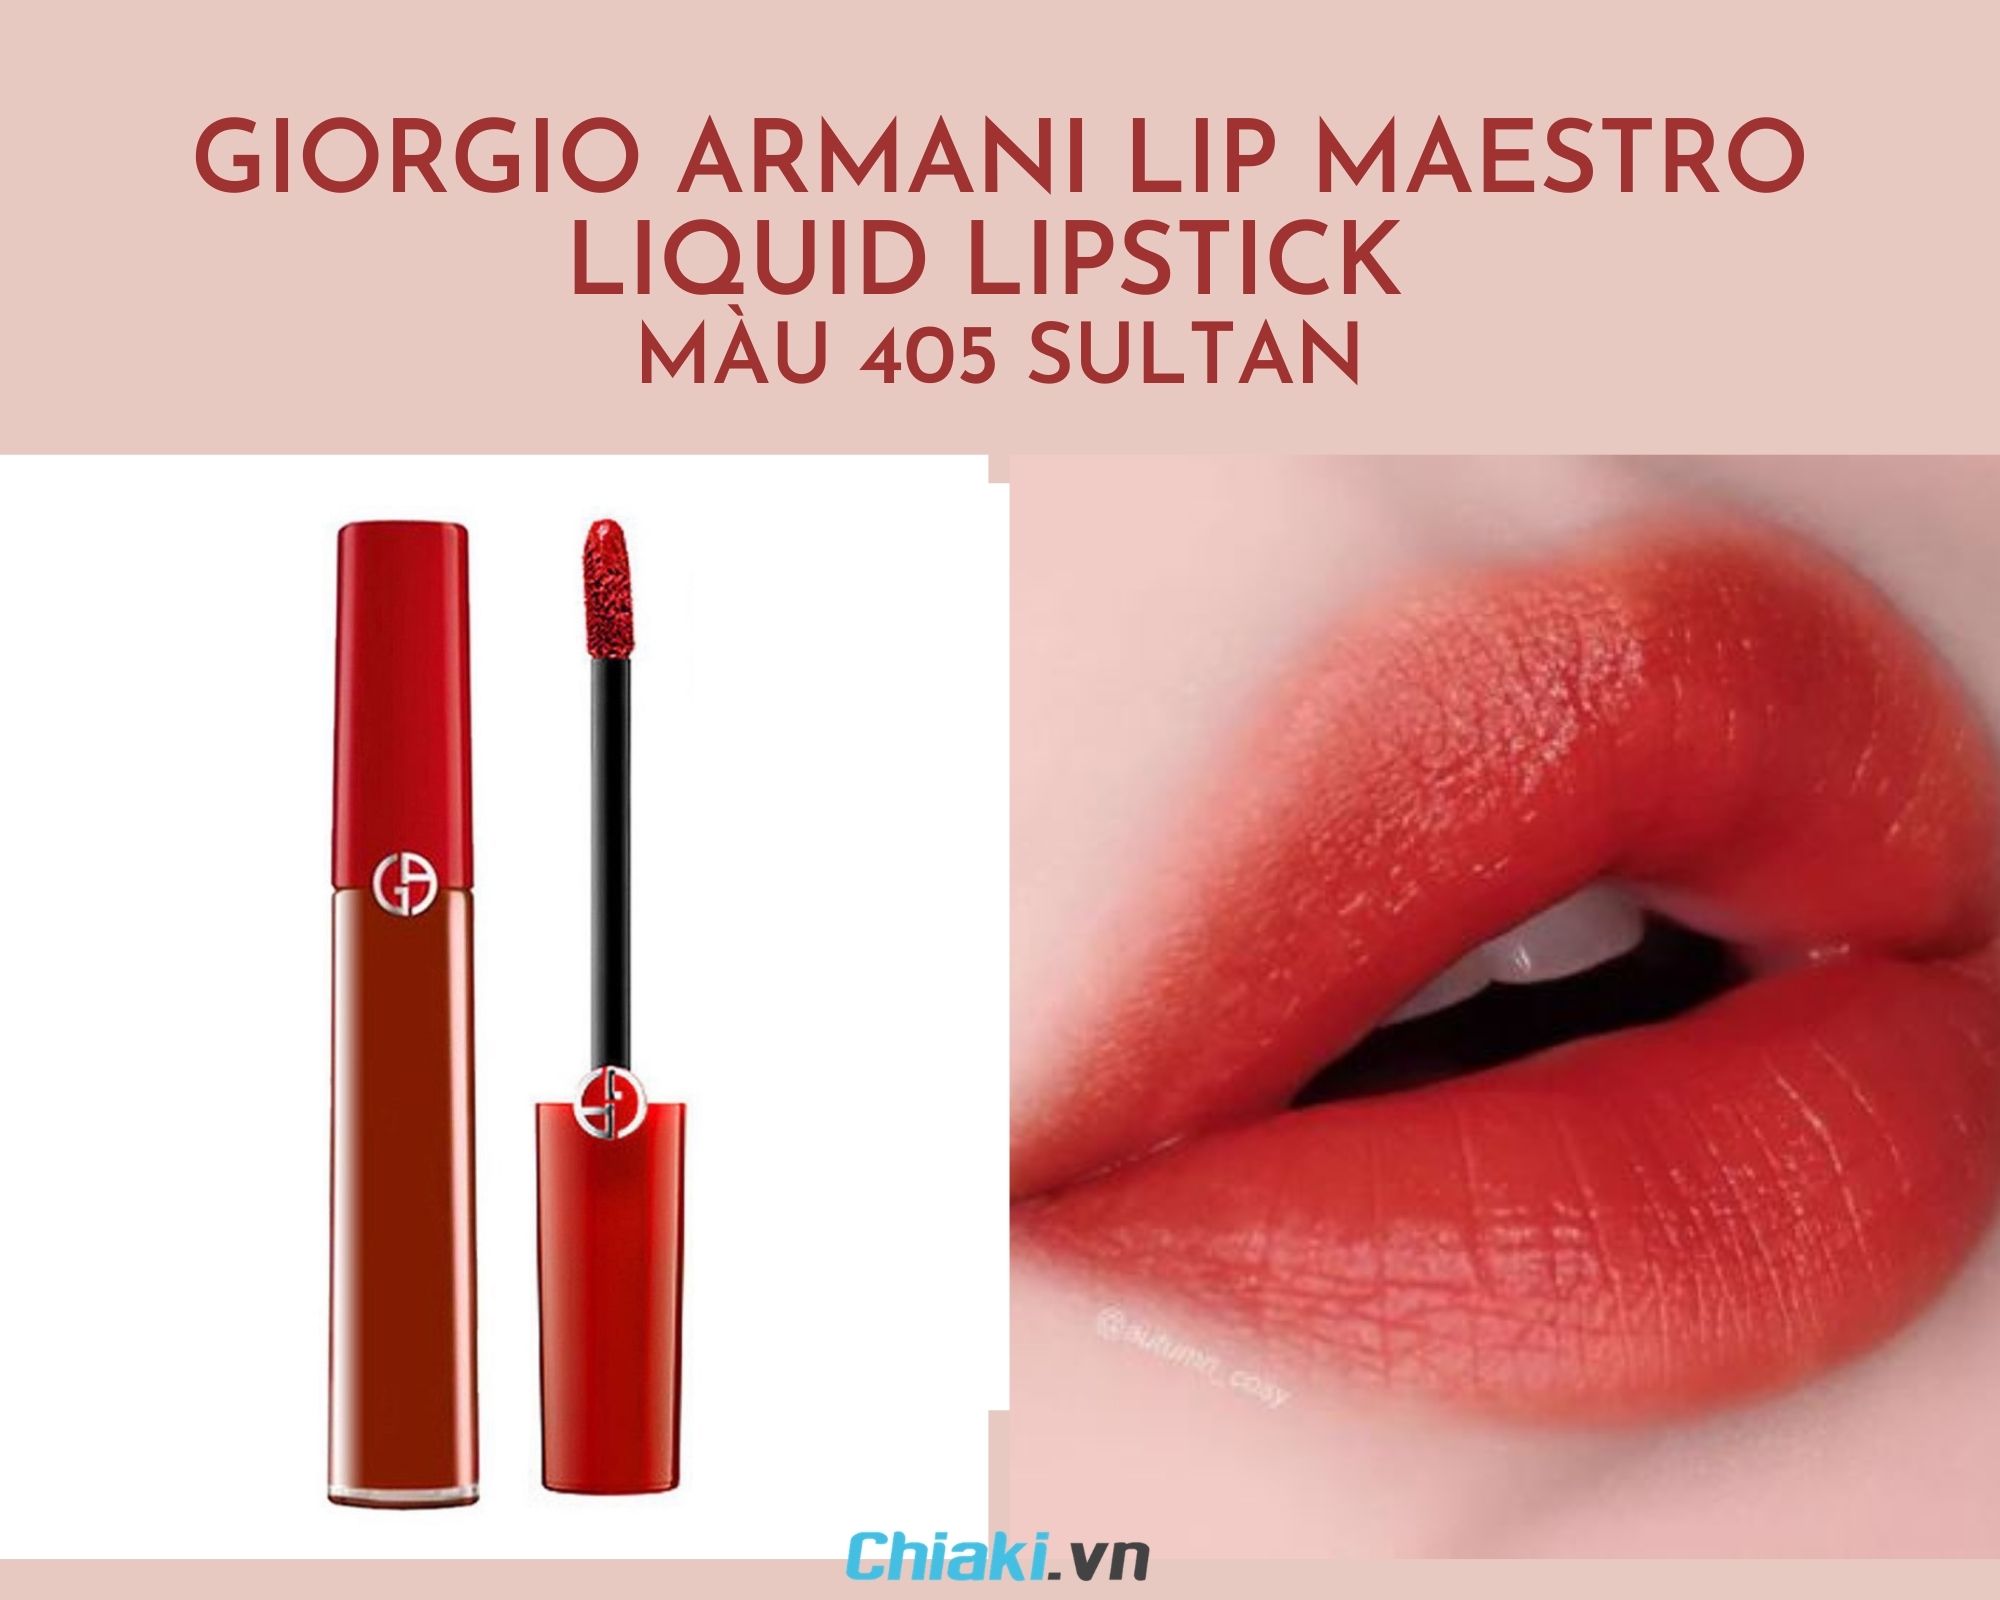 Giorgio Armani Lip Maestro Liquid Lipstick - color 405 Sultan đỏ hỏn gạch